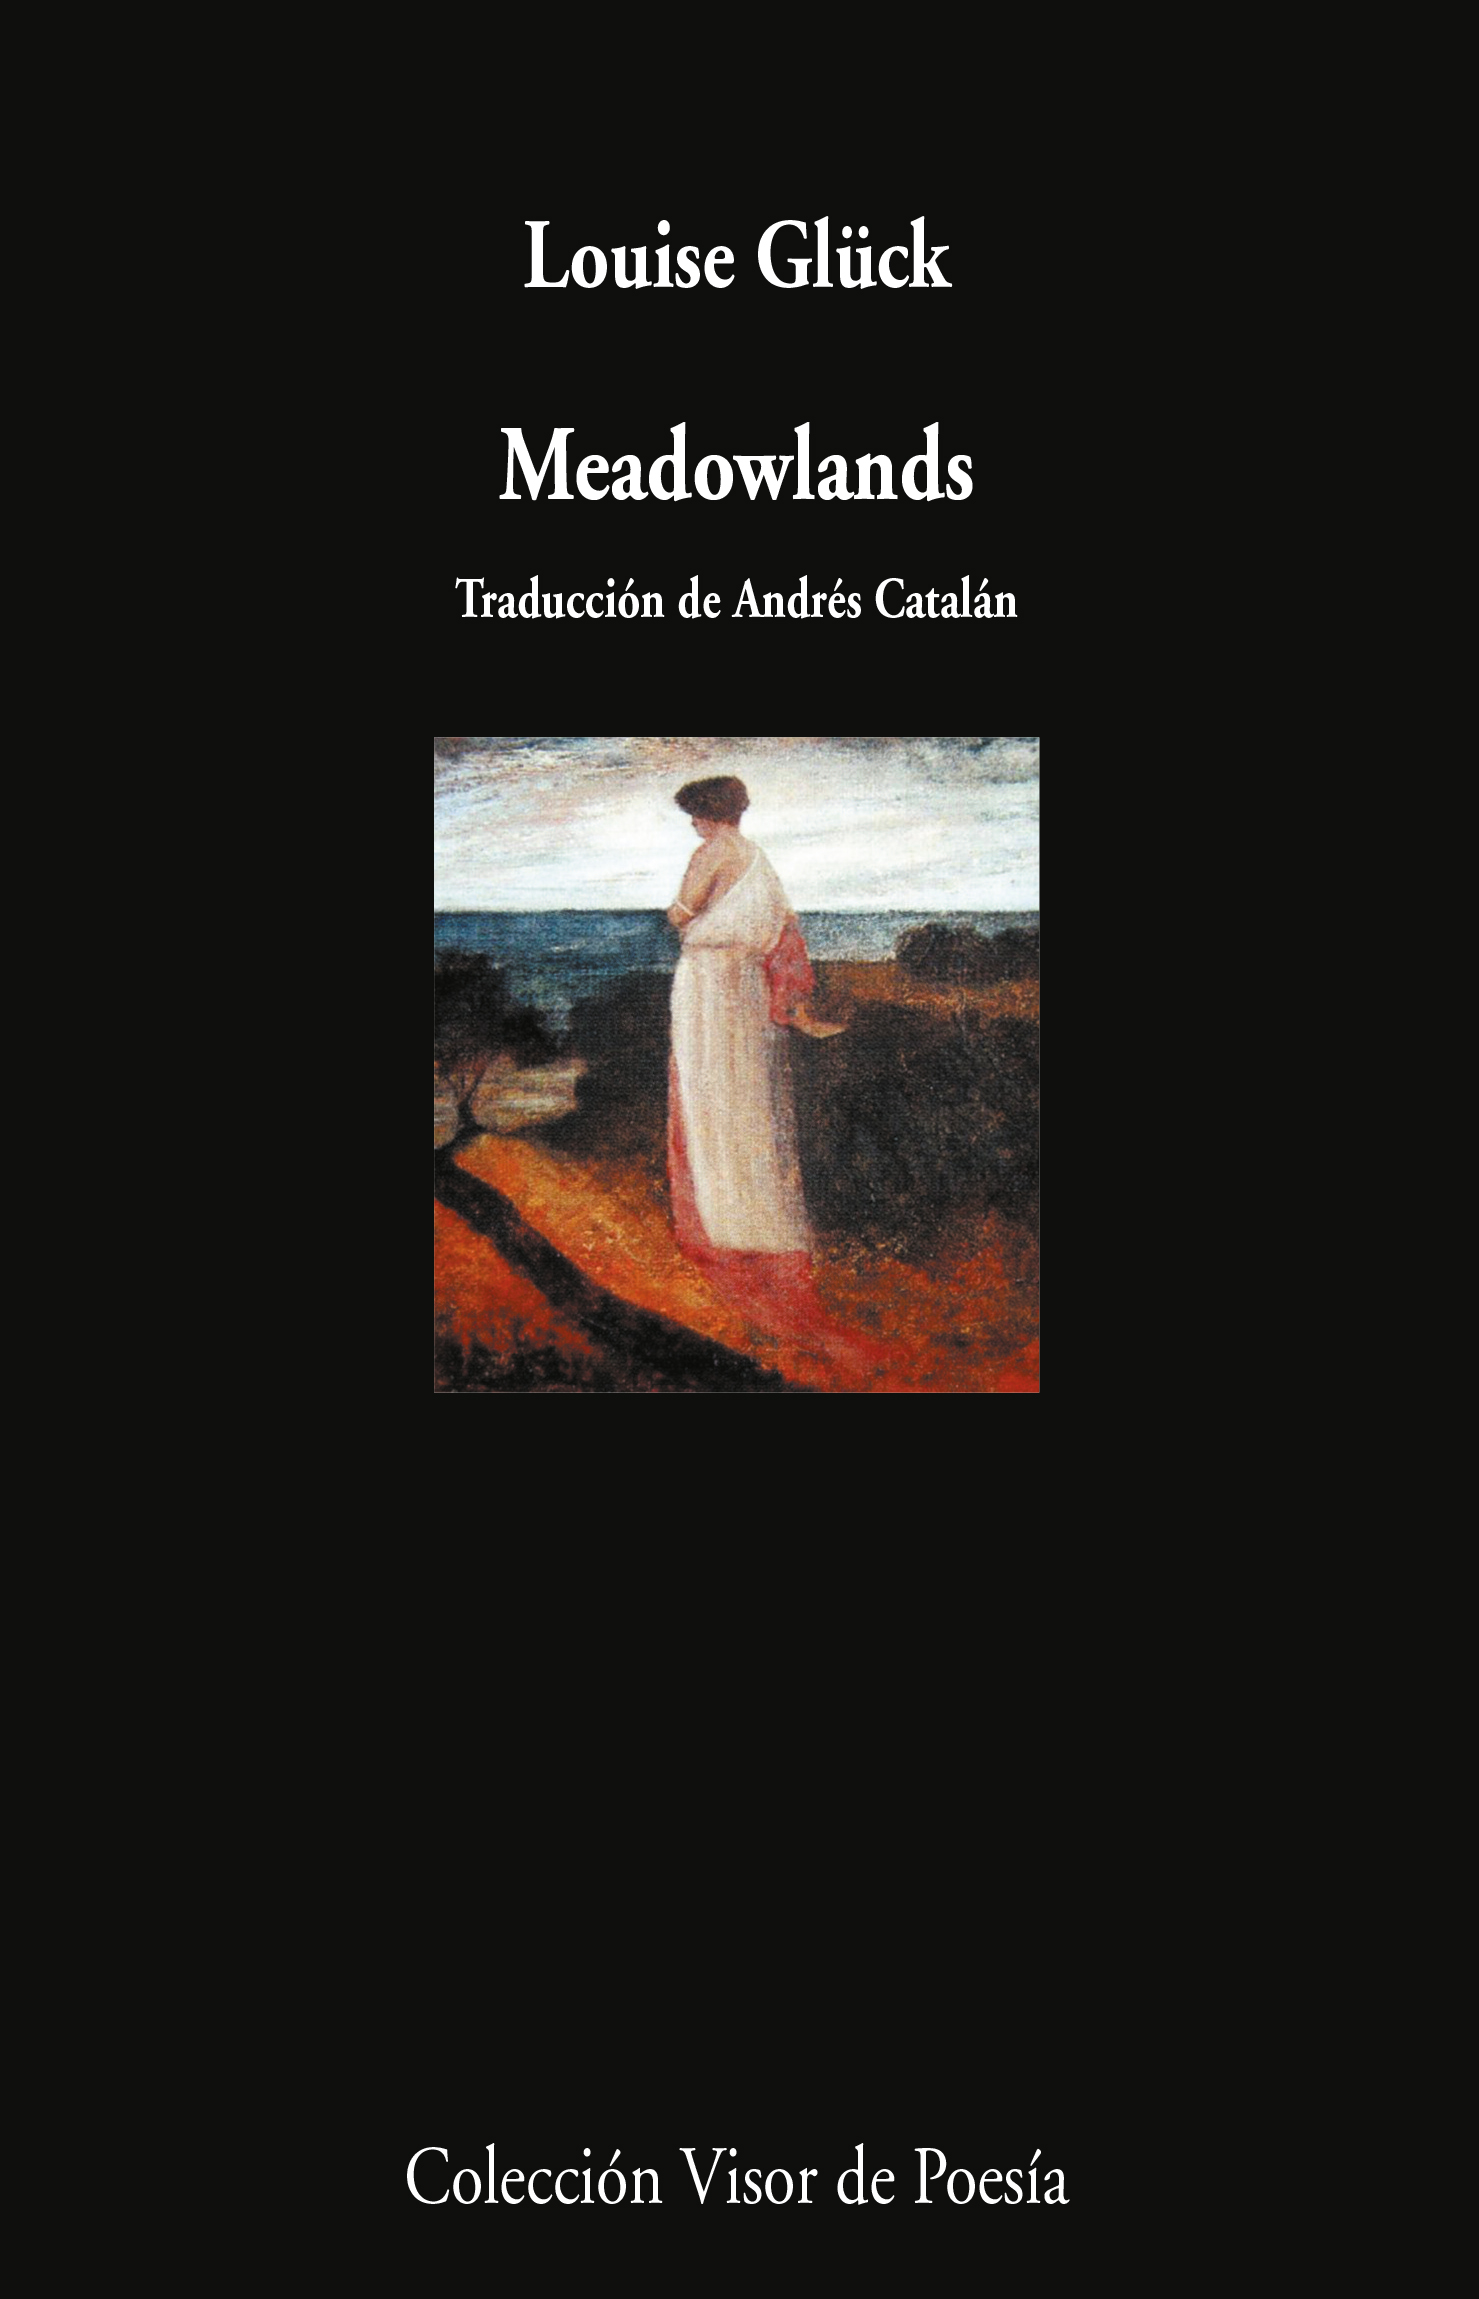 5 poemas de ‘Meadowlands’, de Louise Glück